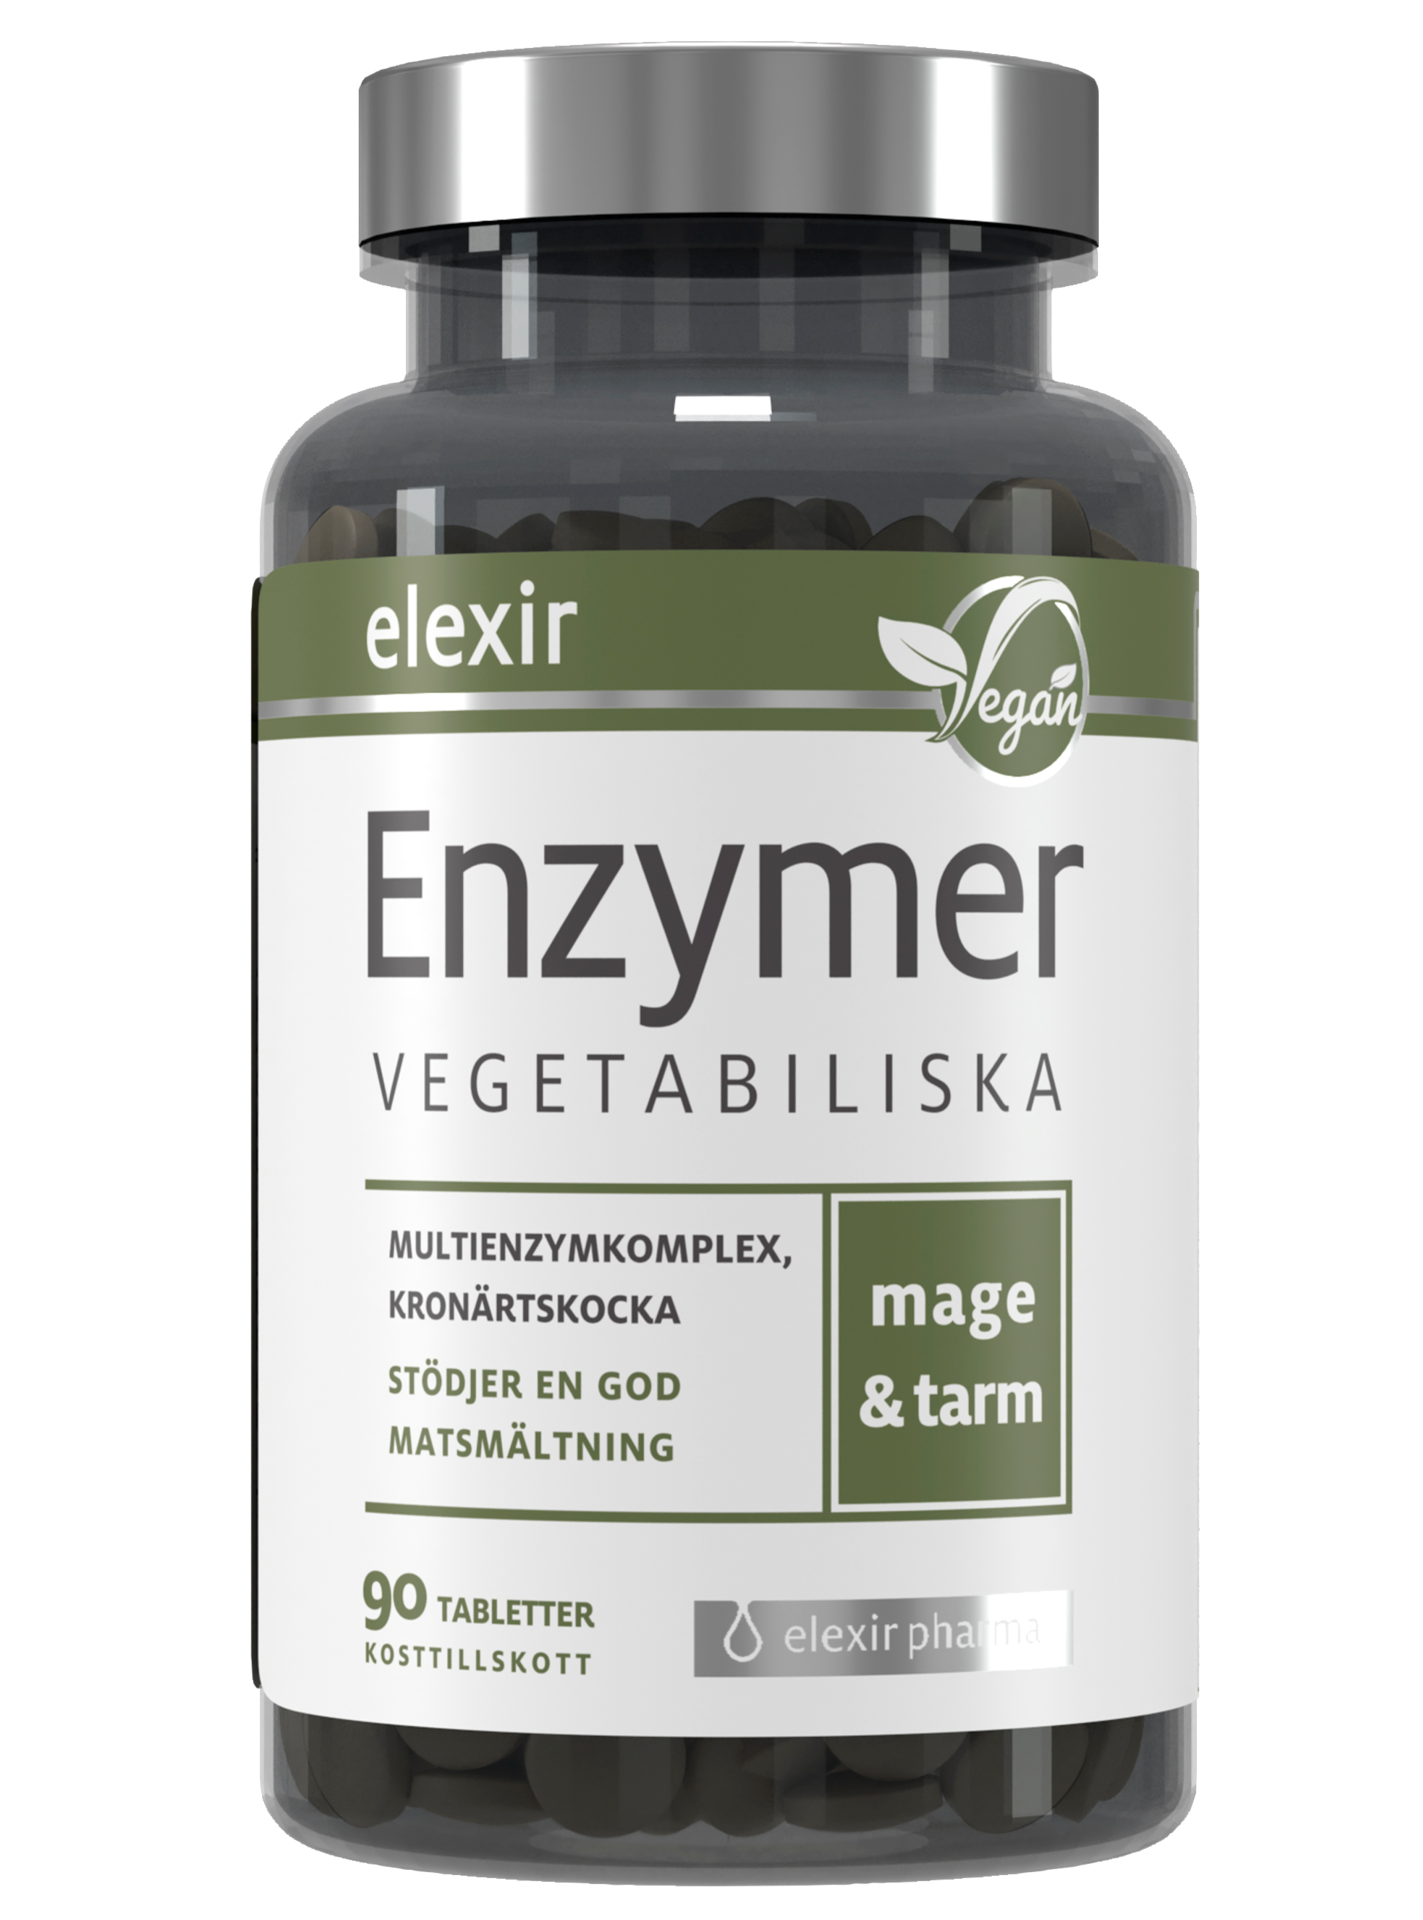 Elexir Matsmältningsenzymer 90 tabletter